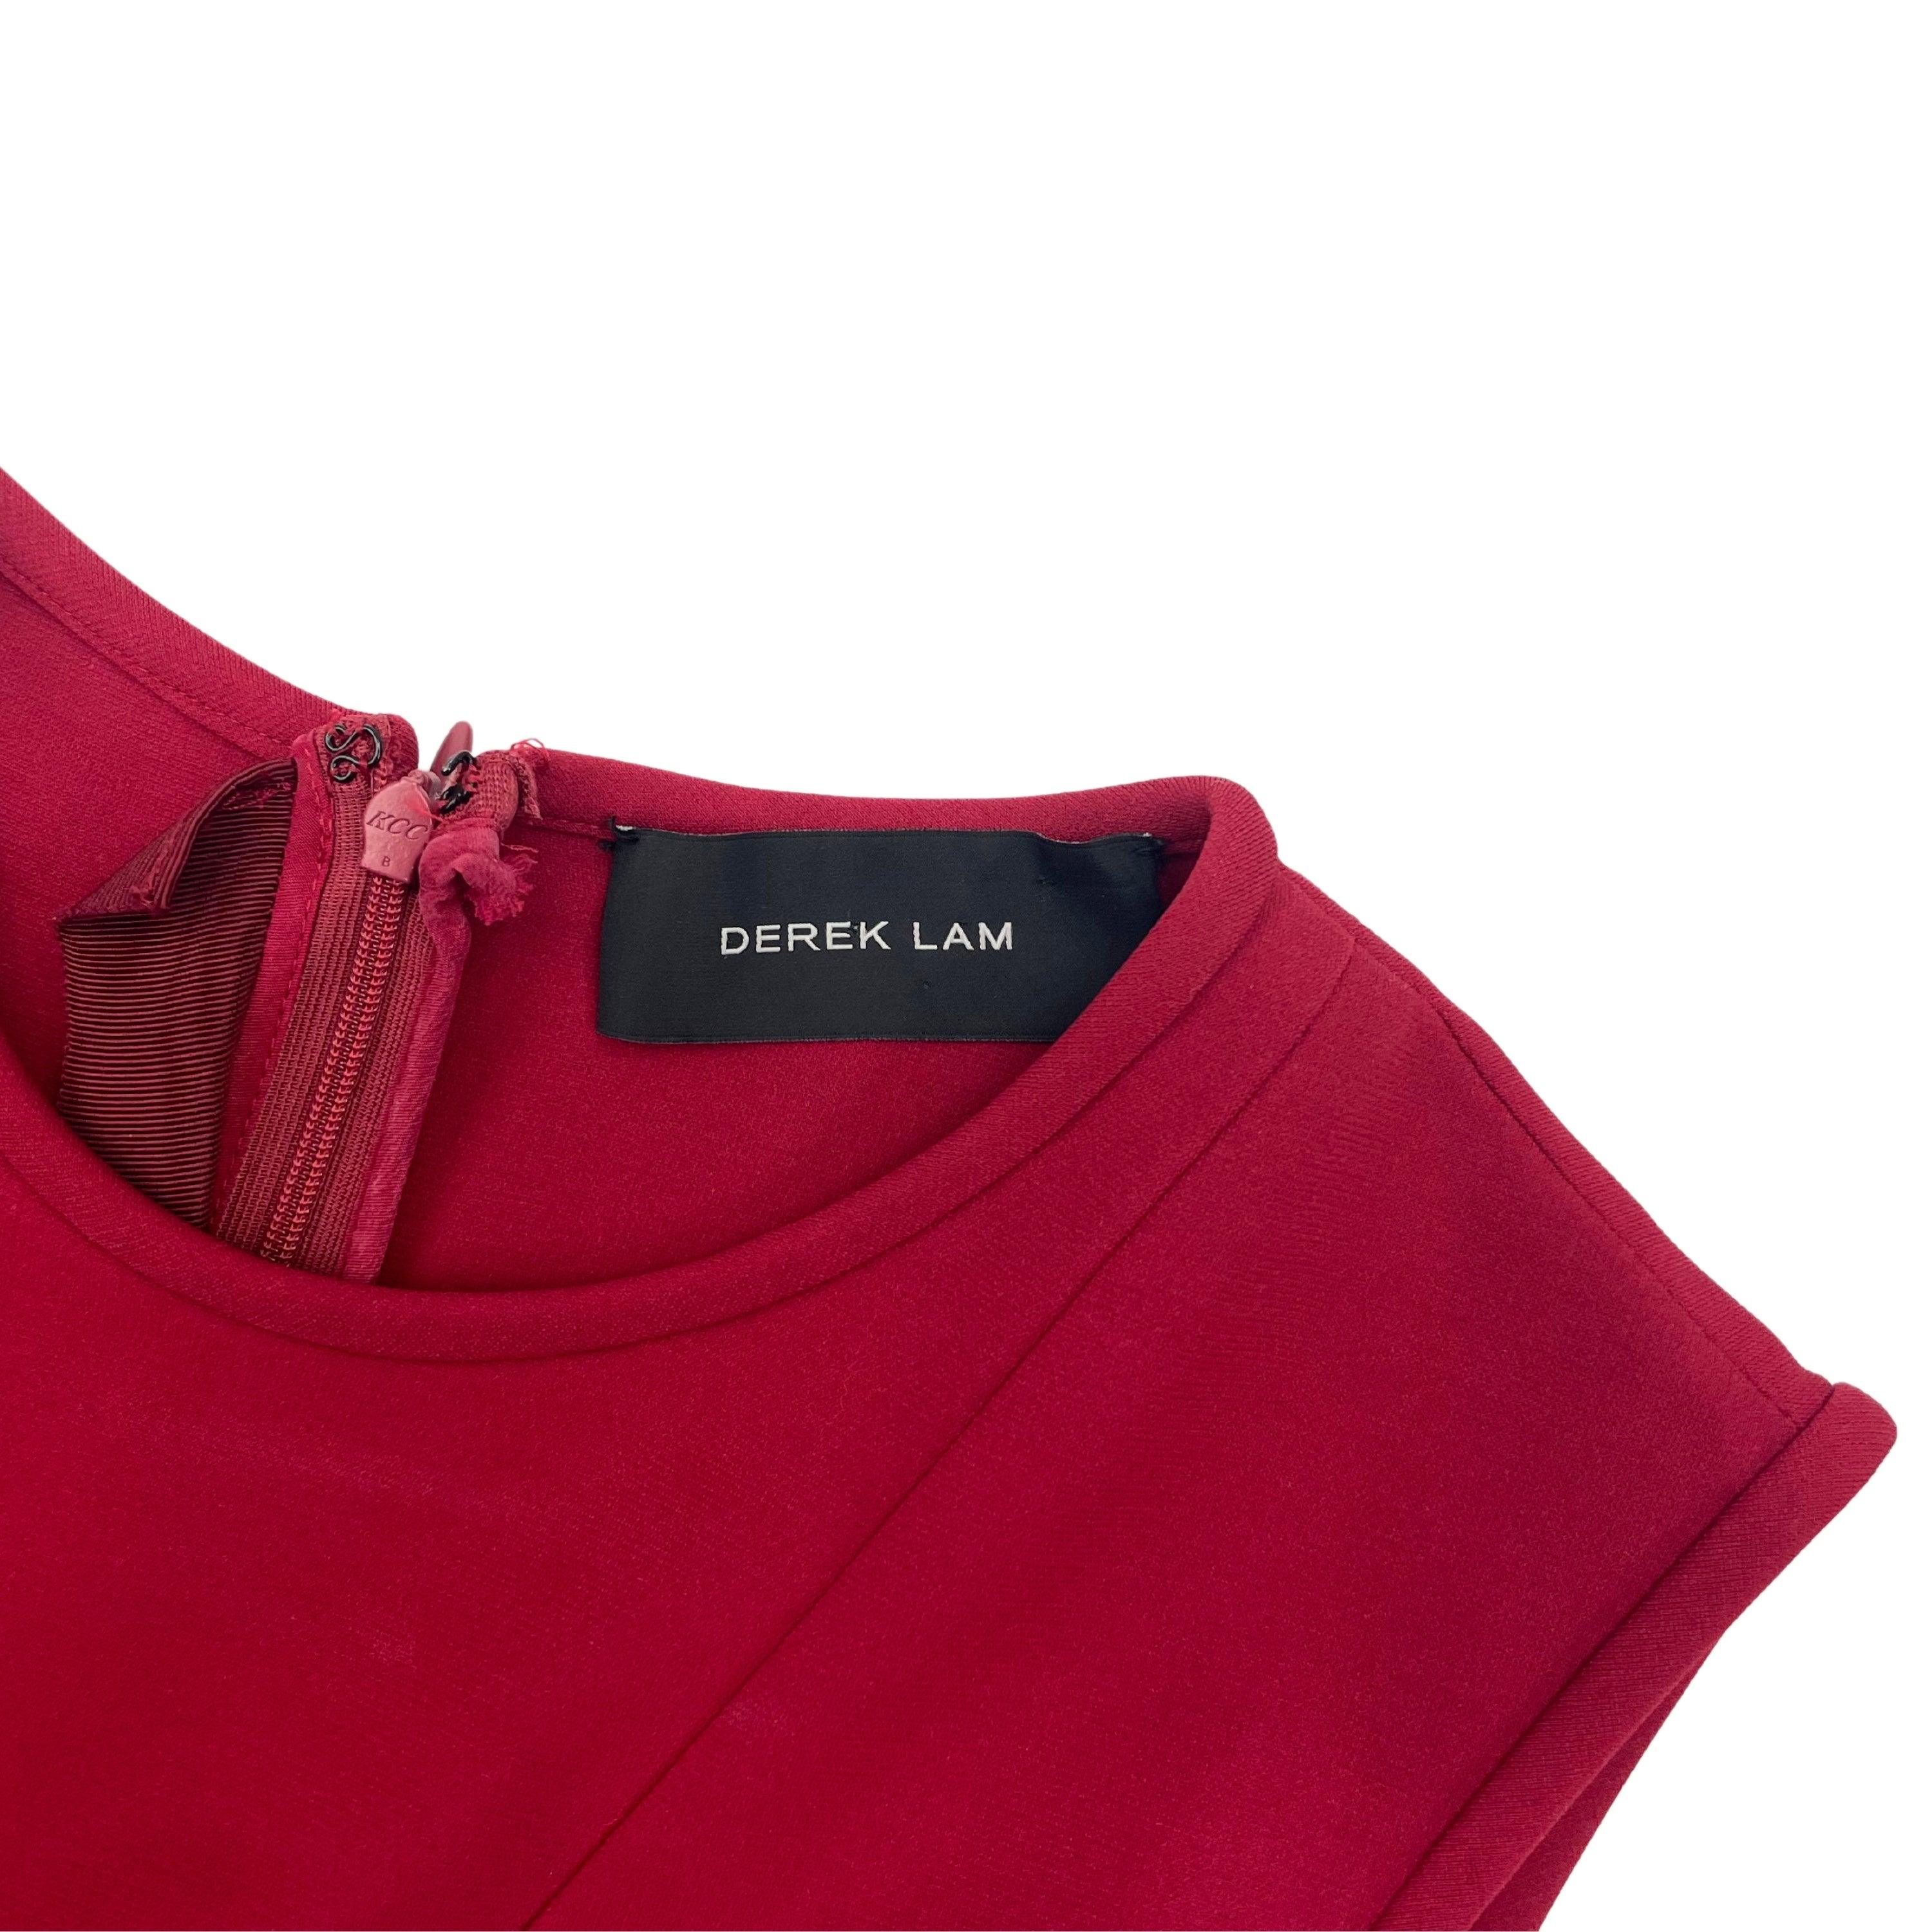 Derek Lam Dress - Women's 6 - Fashionably Yours